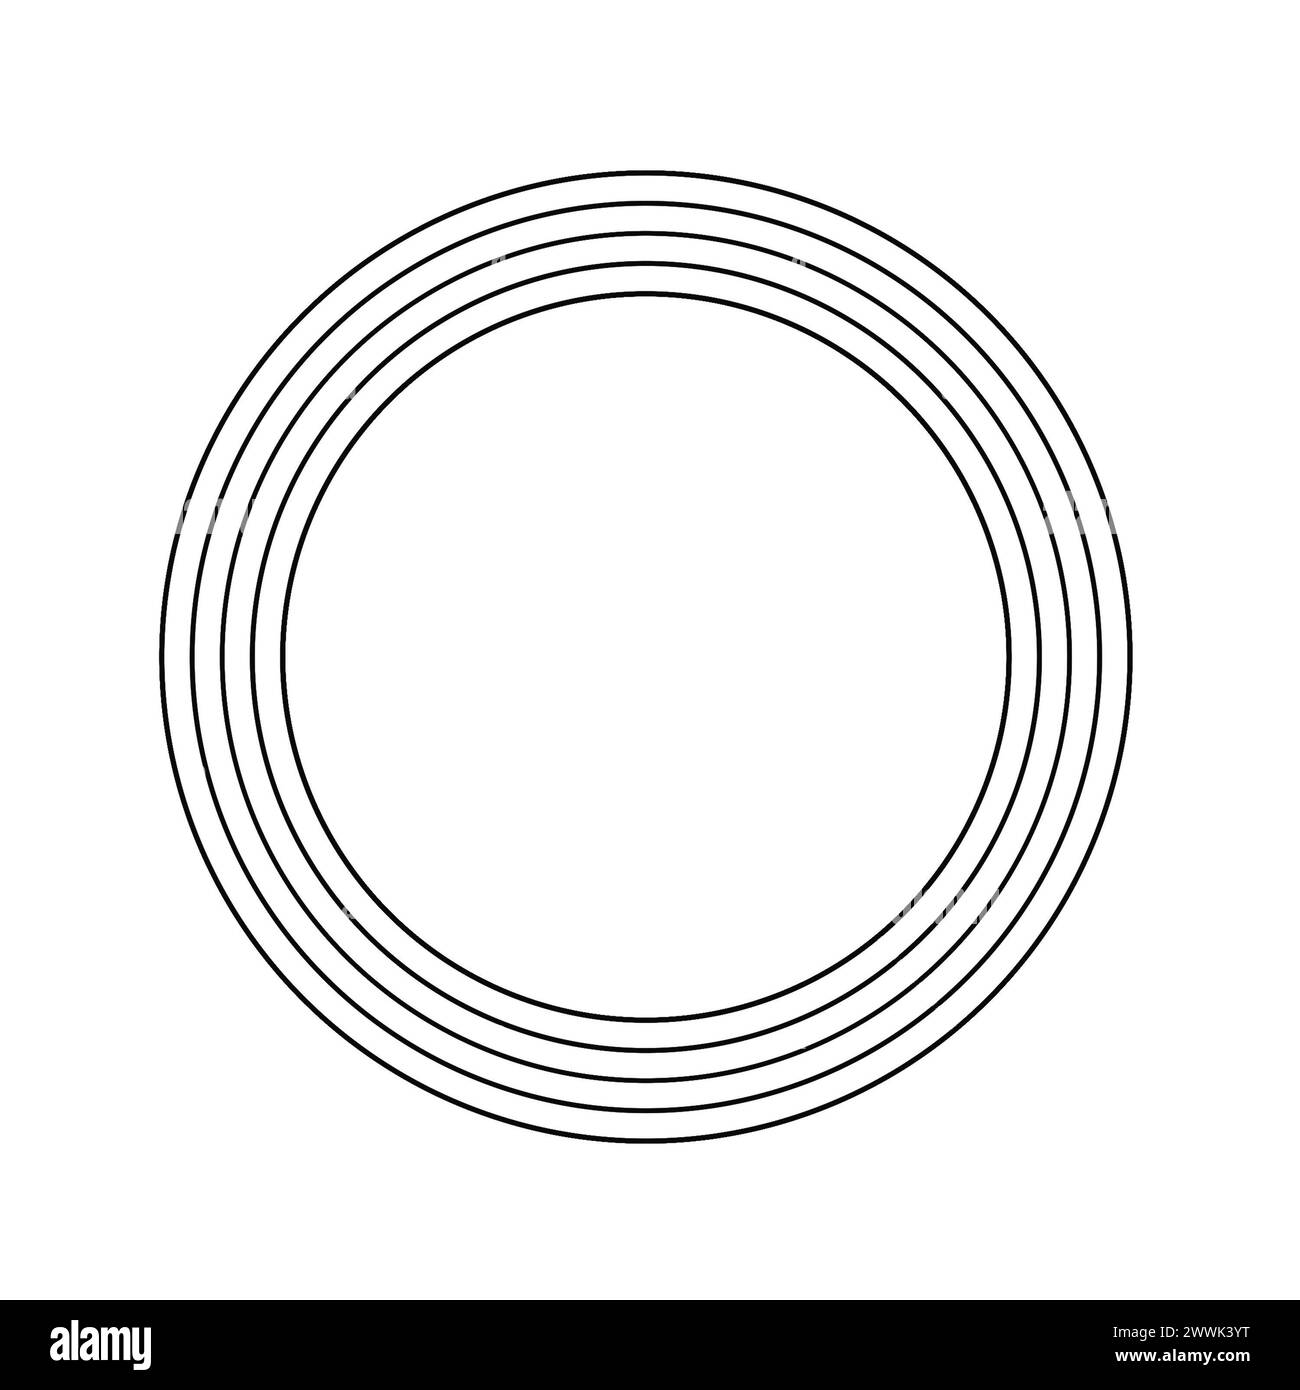 Kreisförmiges Rahmendesign, isoliert auf weißem Hintergrund. Für die Inneneinrichtung. Fotorahmen. Entwurfsobjekt in abgewickelter Form. Schwarzweißrahmen Stockfoto